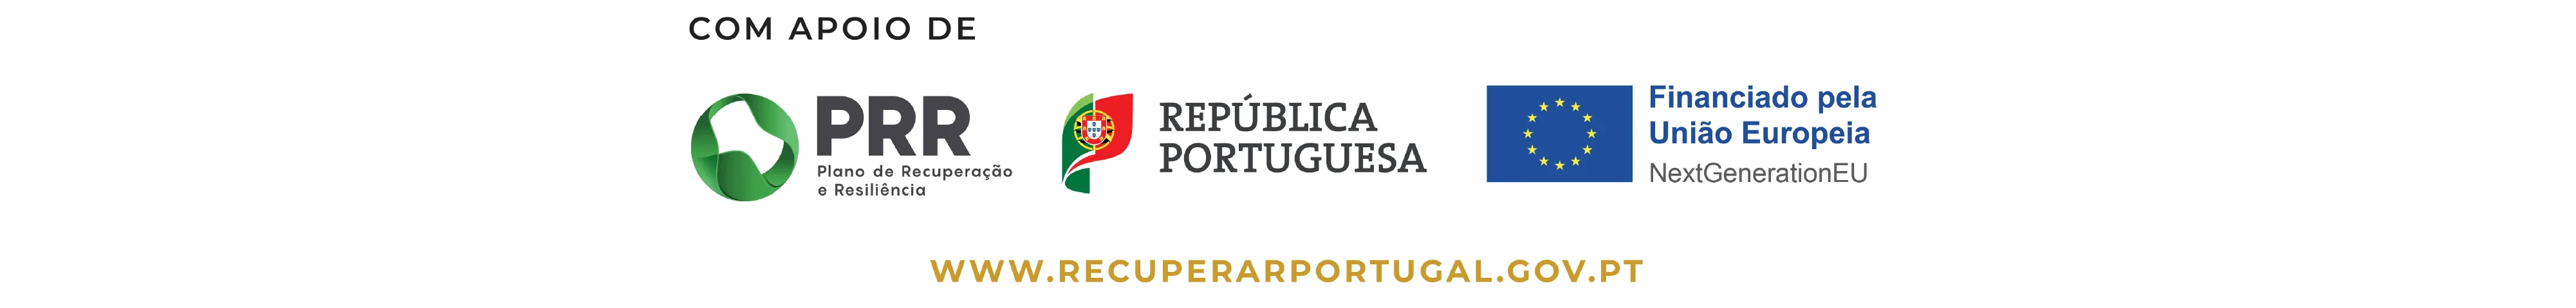 Logótipos PRR: Plano de Recuperação e Resiliências, República Portuguesa e Financiado pela União Europeia - Next Generation EU